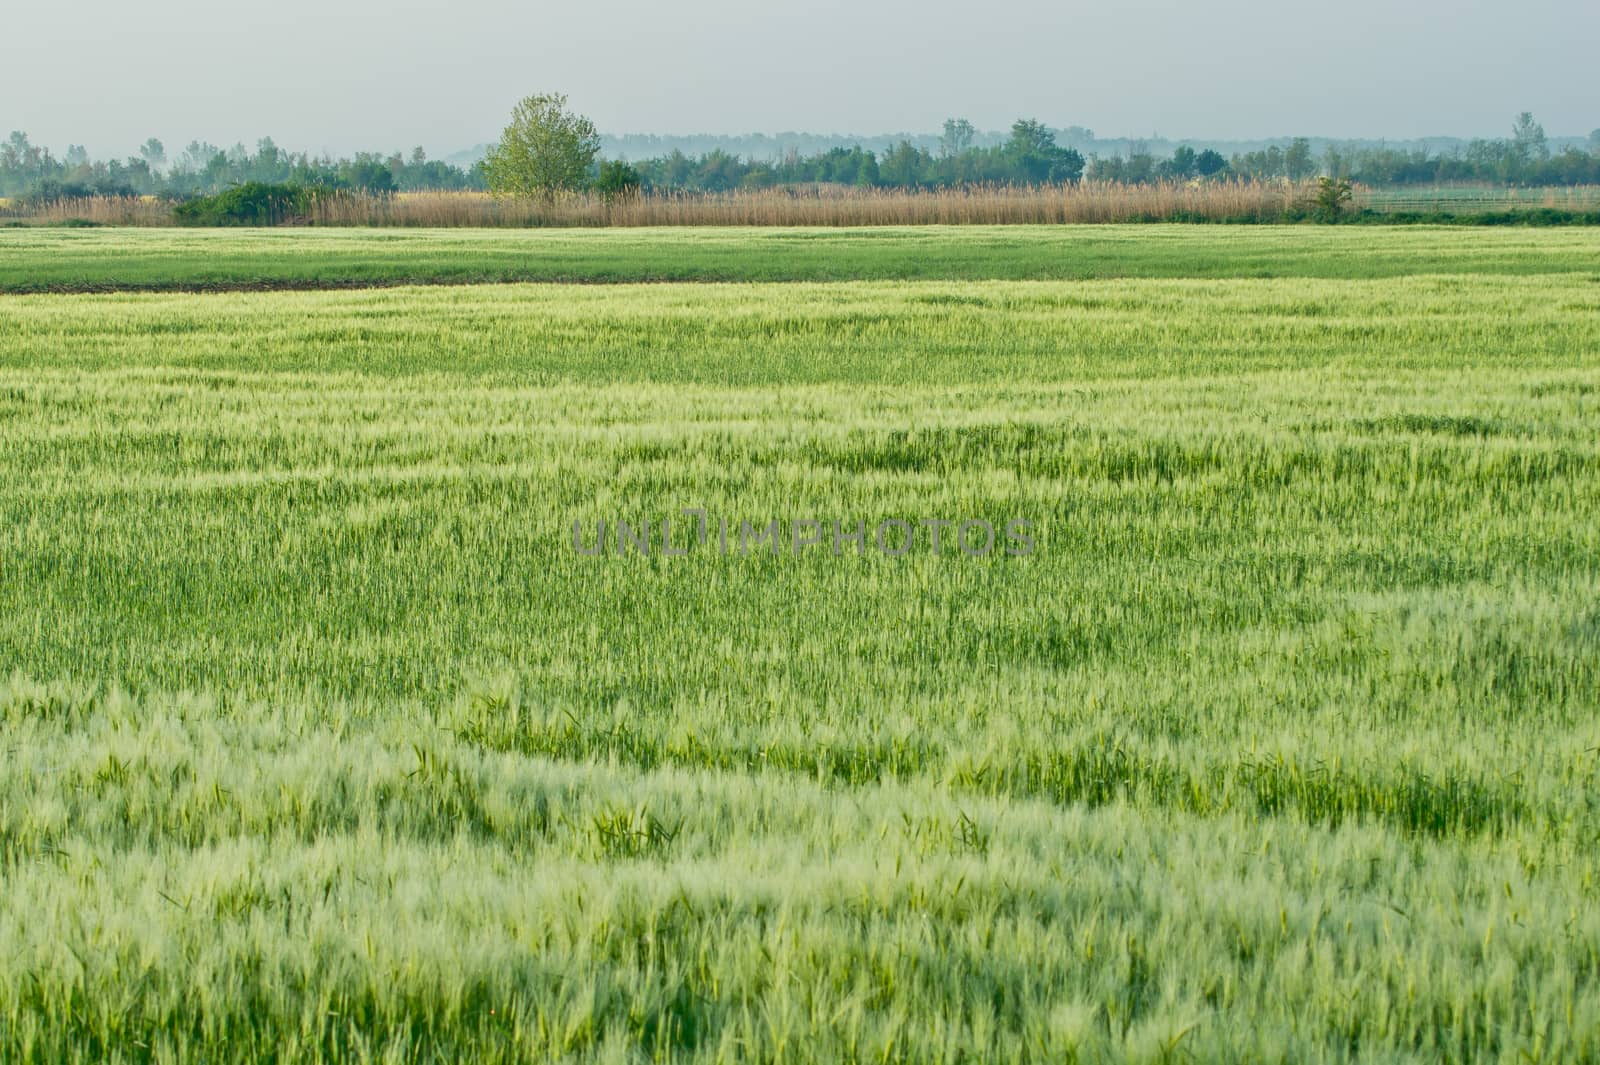 The cereal is barley (Hordeum vulgare) field.